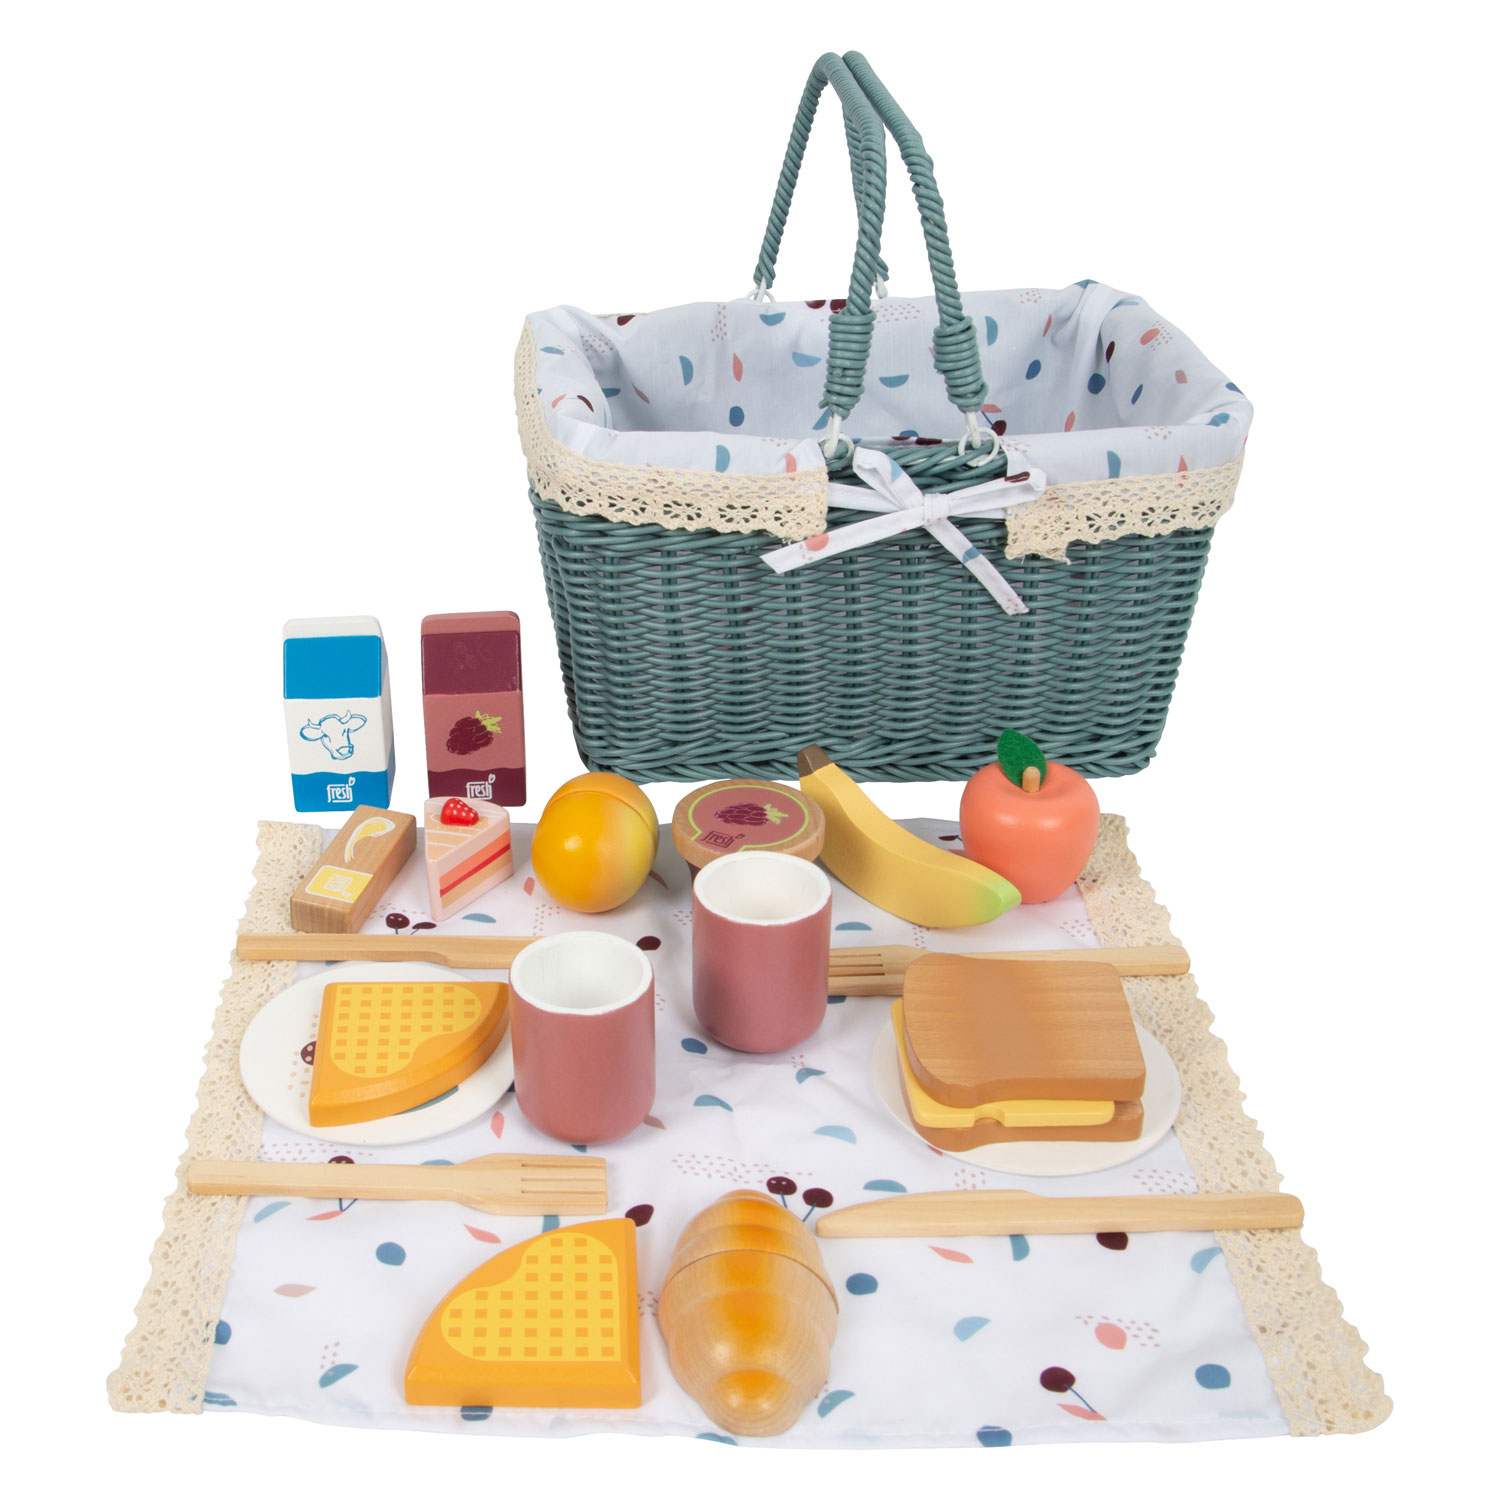 Small Foot - Picknick-Set mit Holzspielzeug Food Tasty, 26dlg.